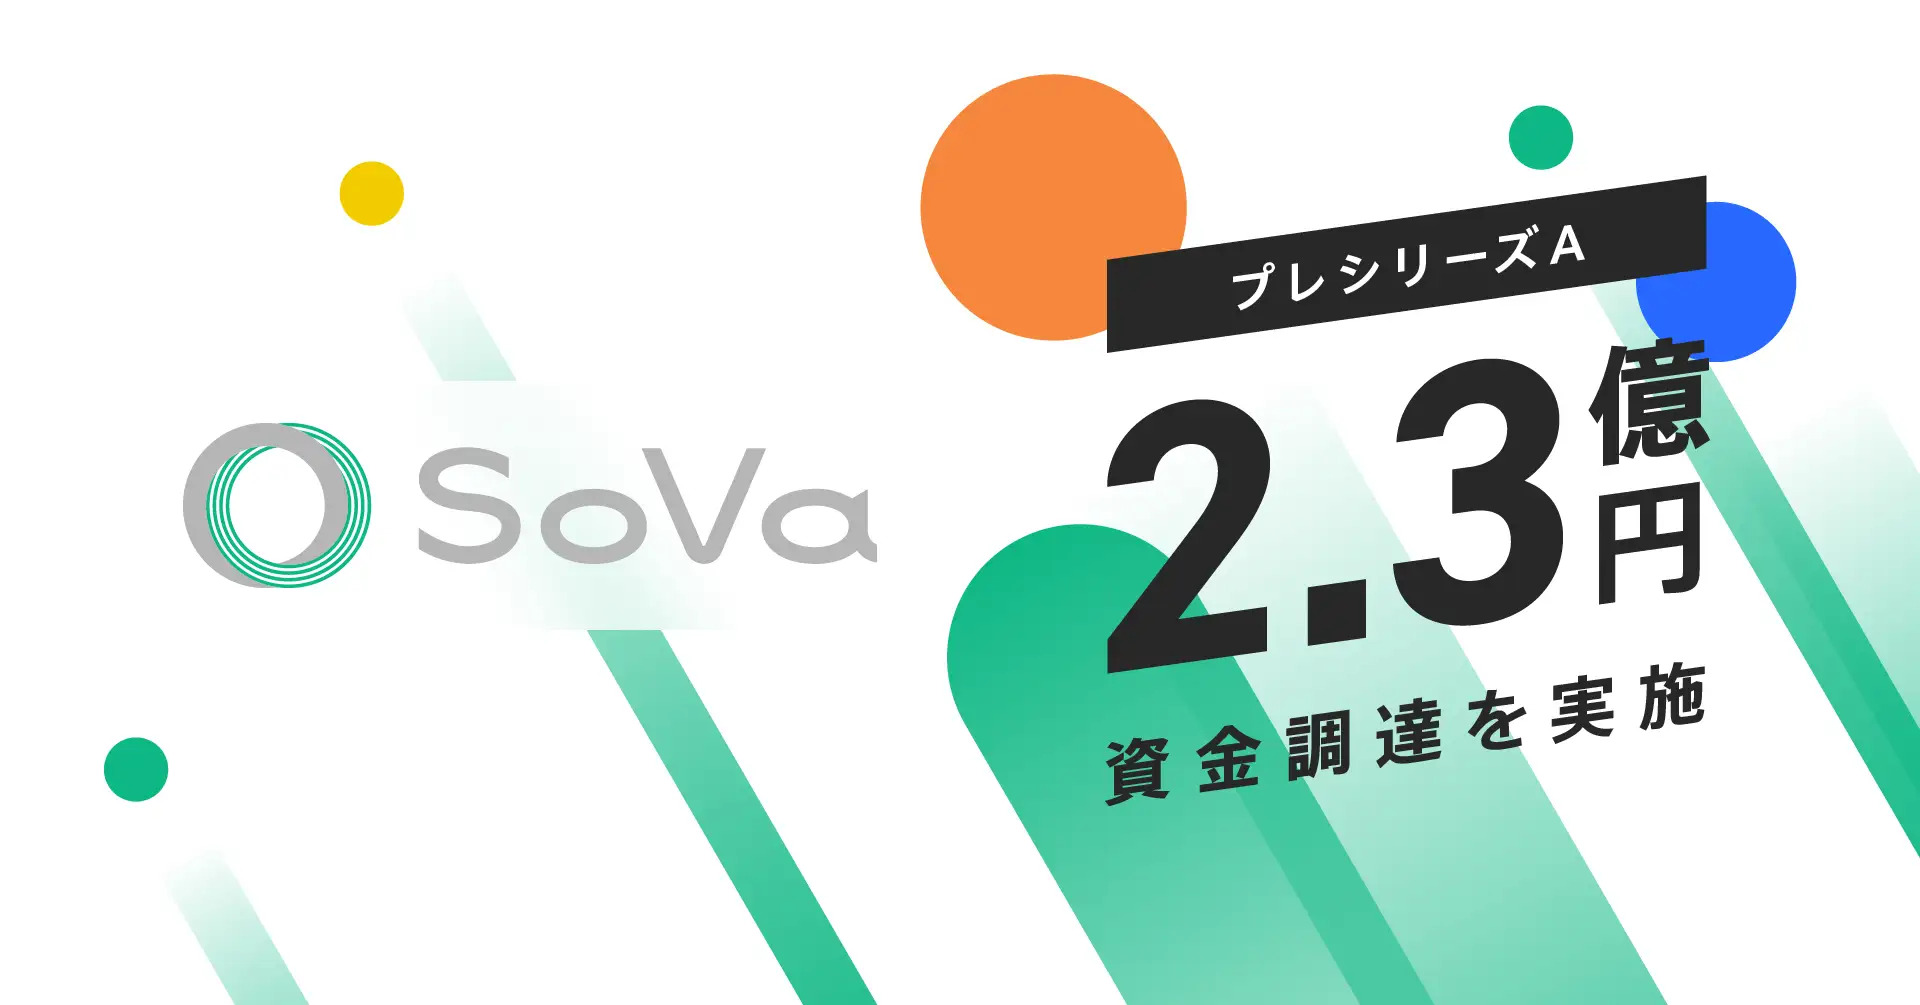 AIと専門家を掛け合わせた新しい形の会計事務所SoVa、2.3億円の資金調達を実施！次世代型会計事務所「SoVa」のプロダクト開発を進め、組織体制強化により事業成長を加速！